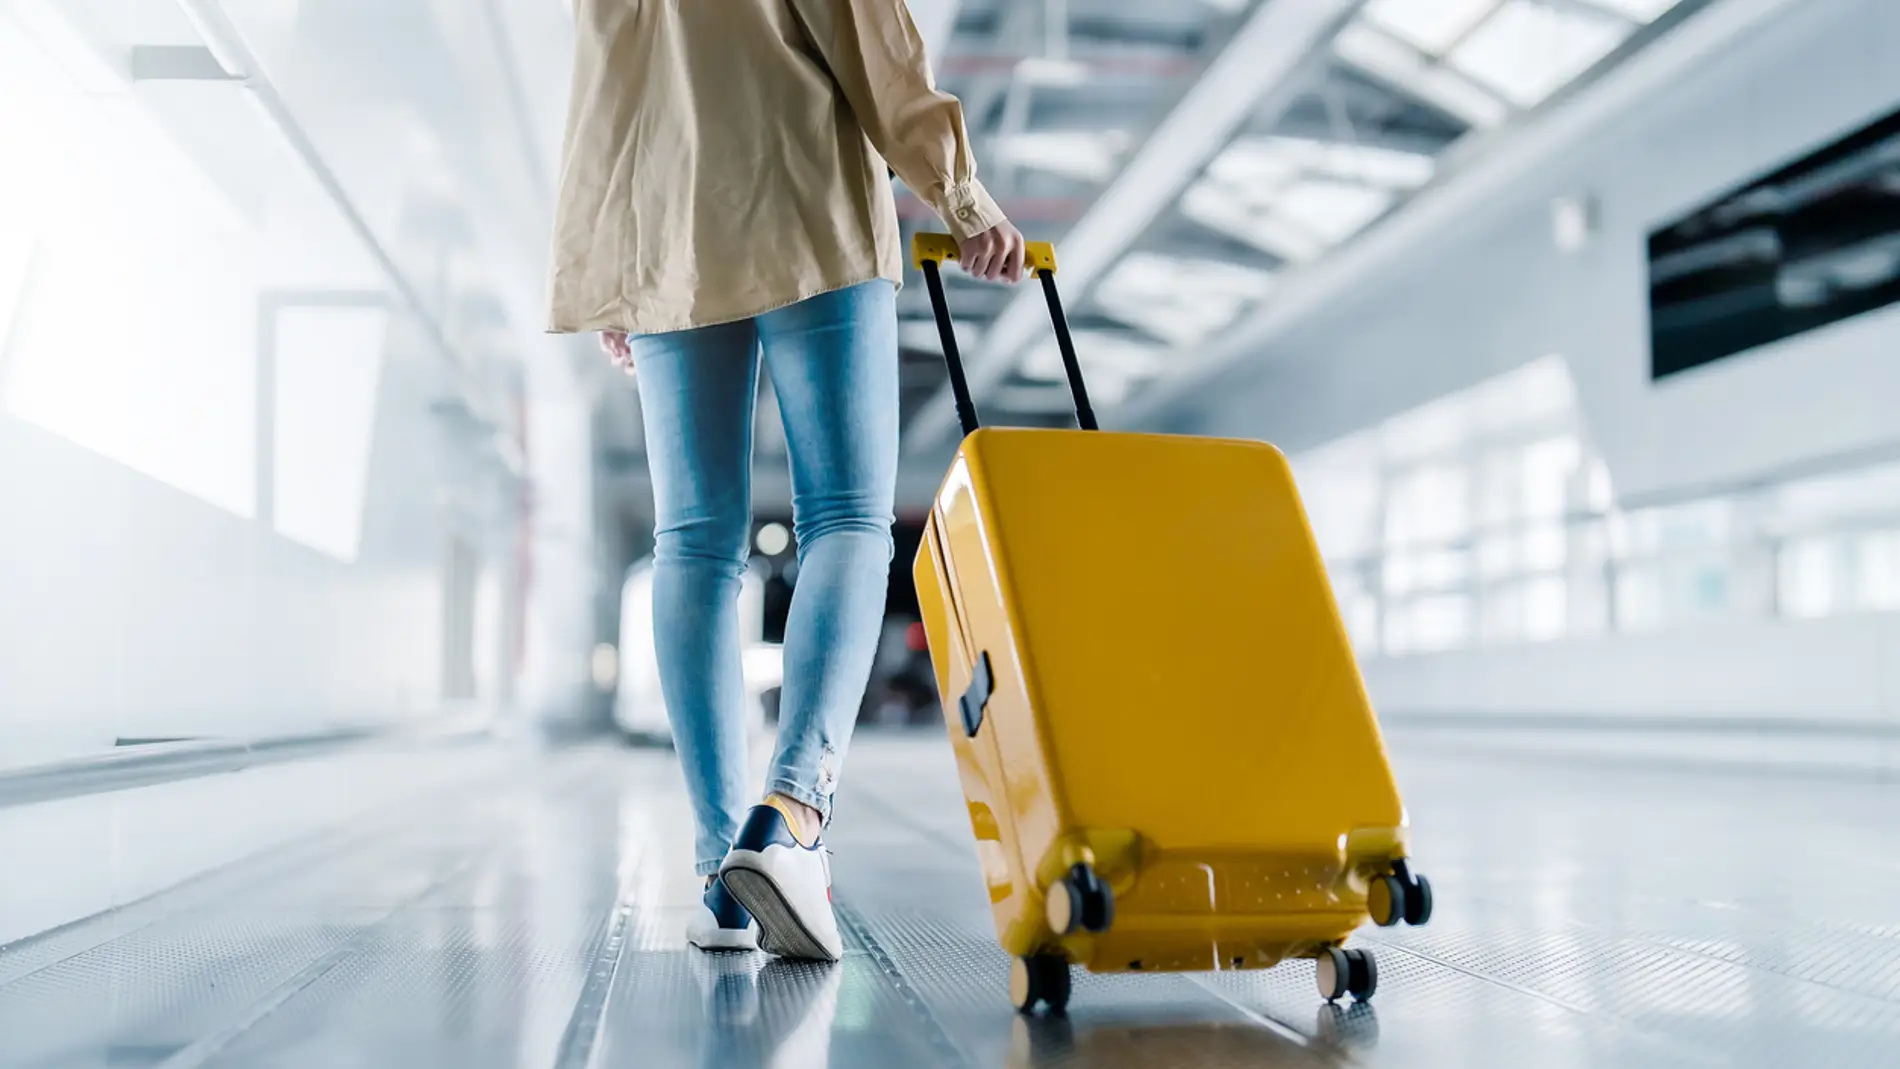 Chica joven con la maleta en el aeropuerto